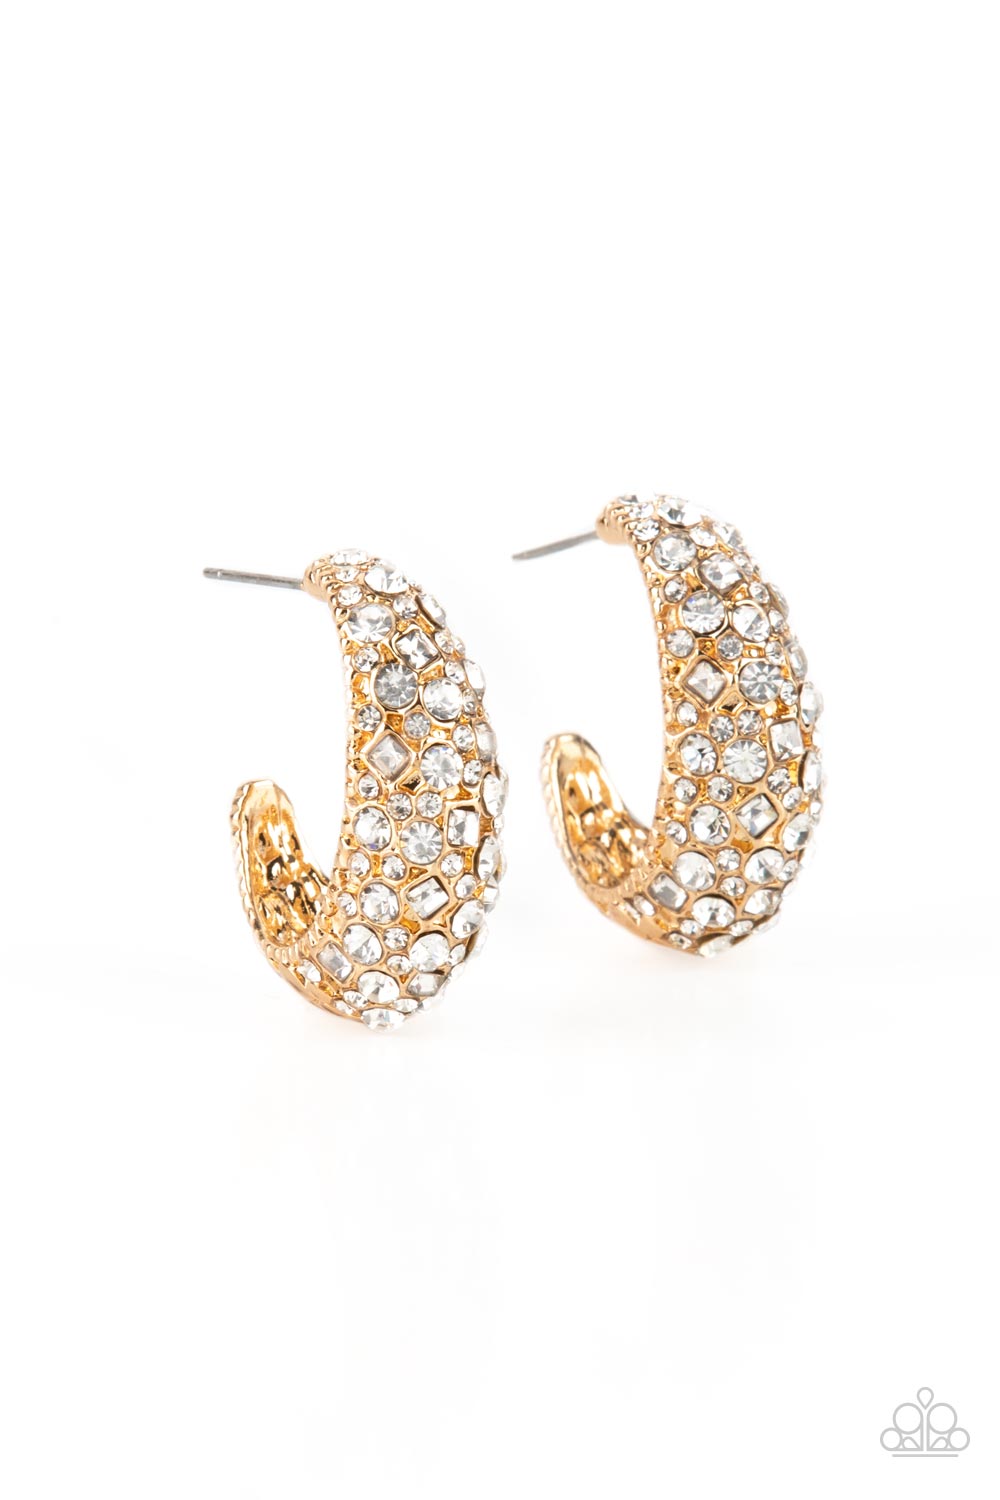 Paparazzi Earring - Glamorously Glimmering - Gold